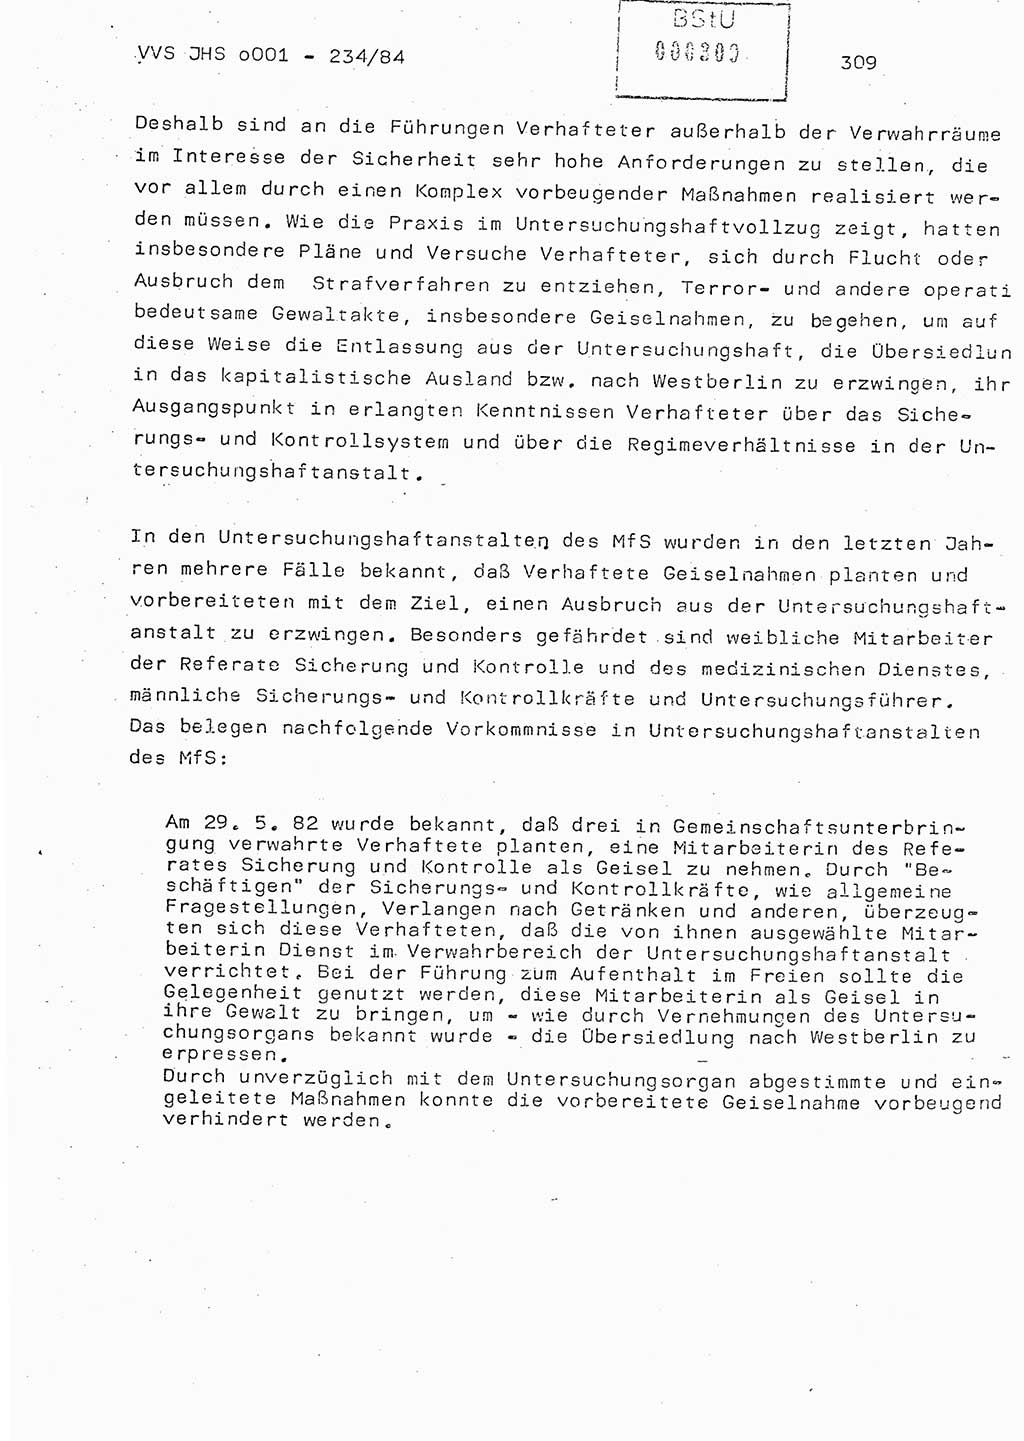 Dissertation Oberst Siegfried Rataizick (Abt. ⅩⅣ), Oberstleutnant Volkmar Heinz (Abt. ⅩⅣ), Oberstleutnant Werner Stein (HA Ⅸ), Hauptmann Heinz Conrad (JHS), Ministerium für Staatssicherheit (MfS) [Deutsche Demokratische Republik (DDR)], Juristische Hochschule (JHS), Vertrauliche Verschlußsache (VVS) o001-234/84, Potsdam 1984, Seite 309 (Diss. MfS DDR JHS VVS o001-234/84 1984, S. 309)